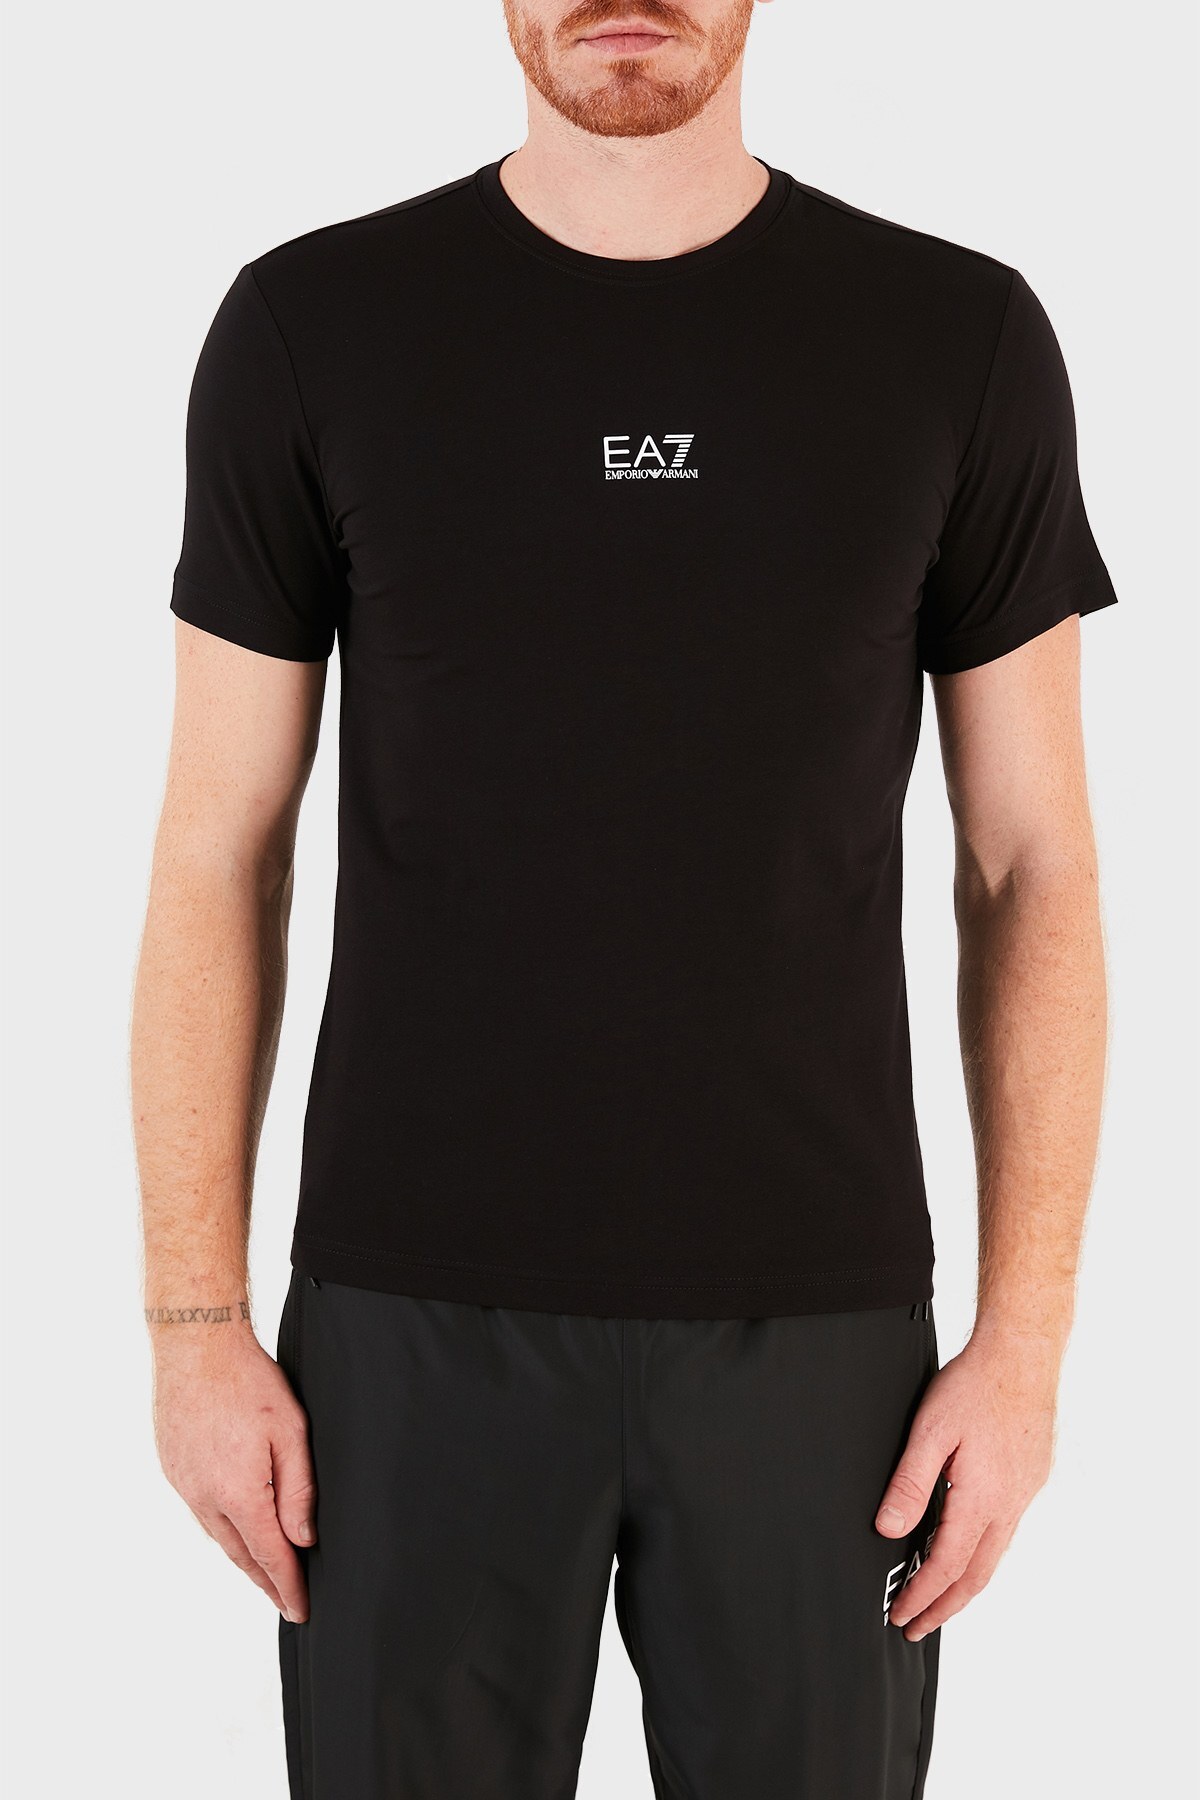 EA7 Logolu Pamuklu Regular Fit Erkek T Shirt S 3KPT15 PJ03Z 1200 SİYAH